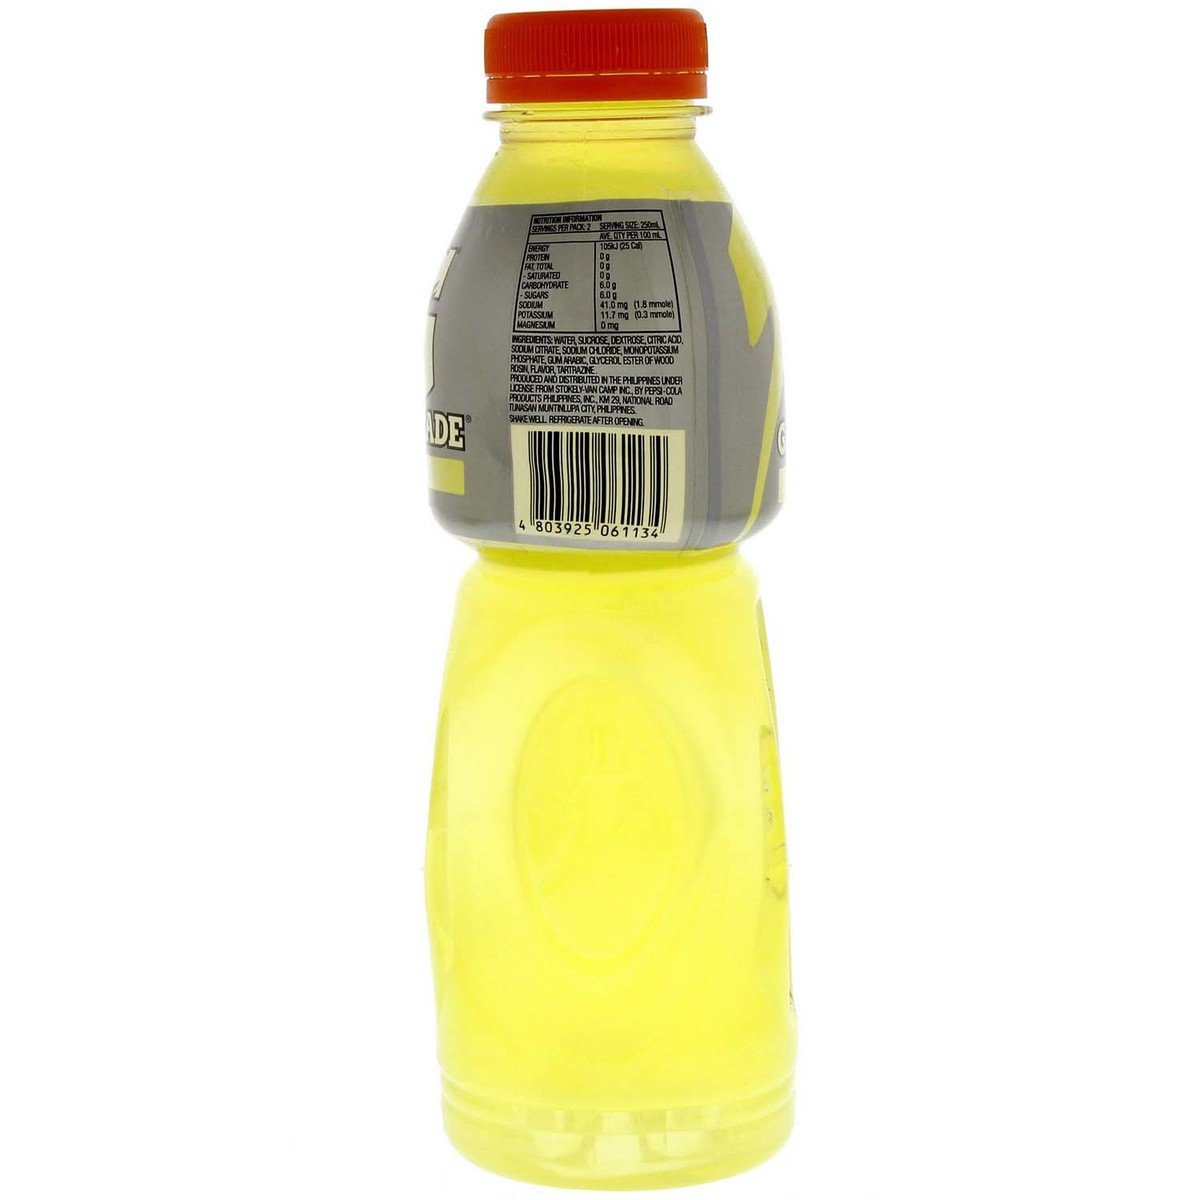 جاتوراد - مشروب الليمون الرياضي ٥٠٠ مل